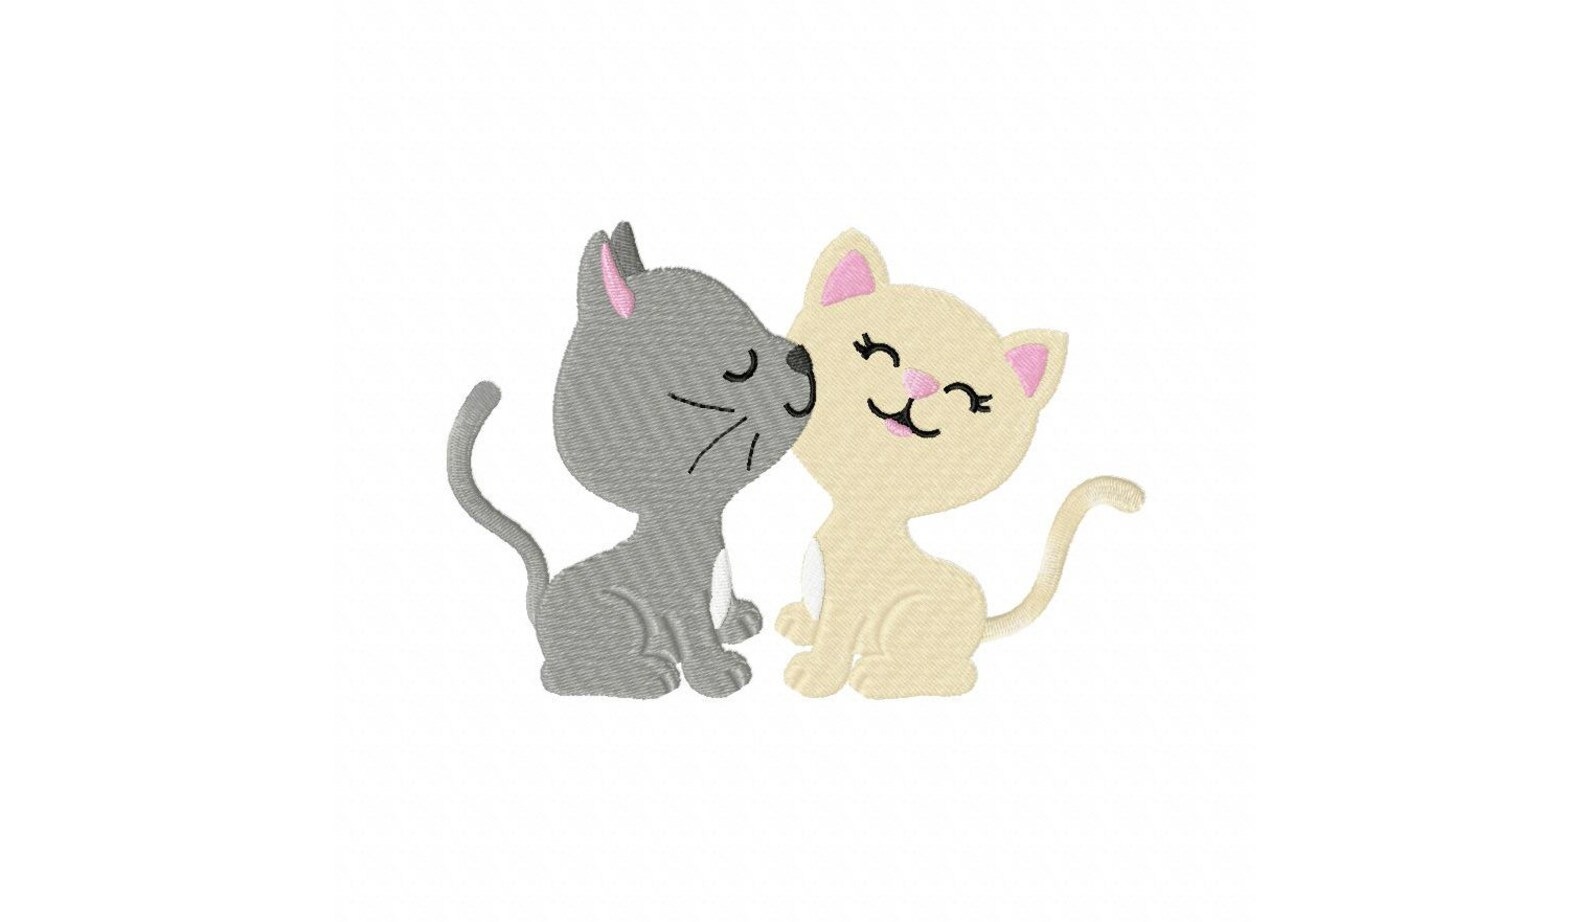 Обои где можно рисовать друг у друга. Котики любовь мультяшные. Две кошки на прозрачном фоне. Влюбленные котики. Парные обои с котиками.